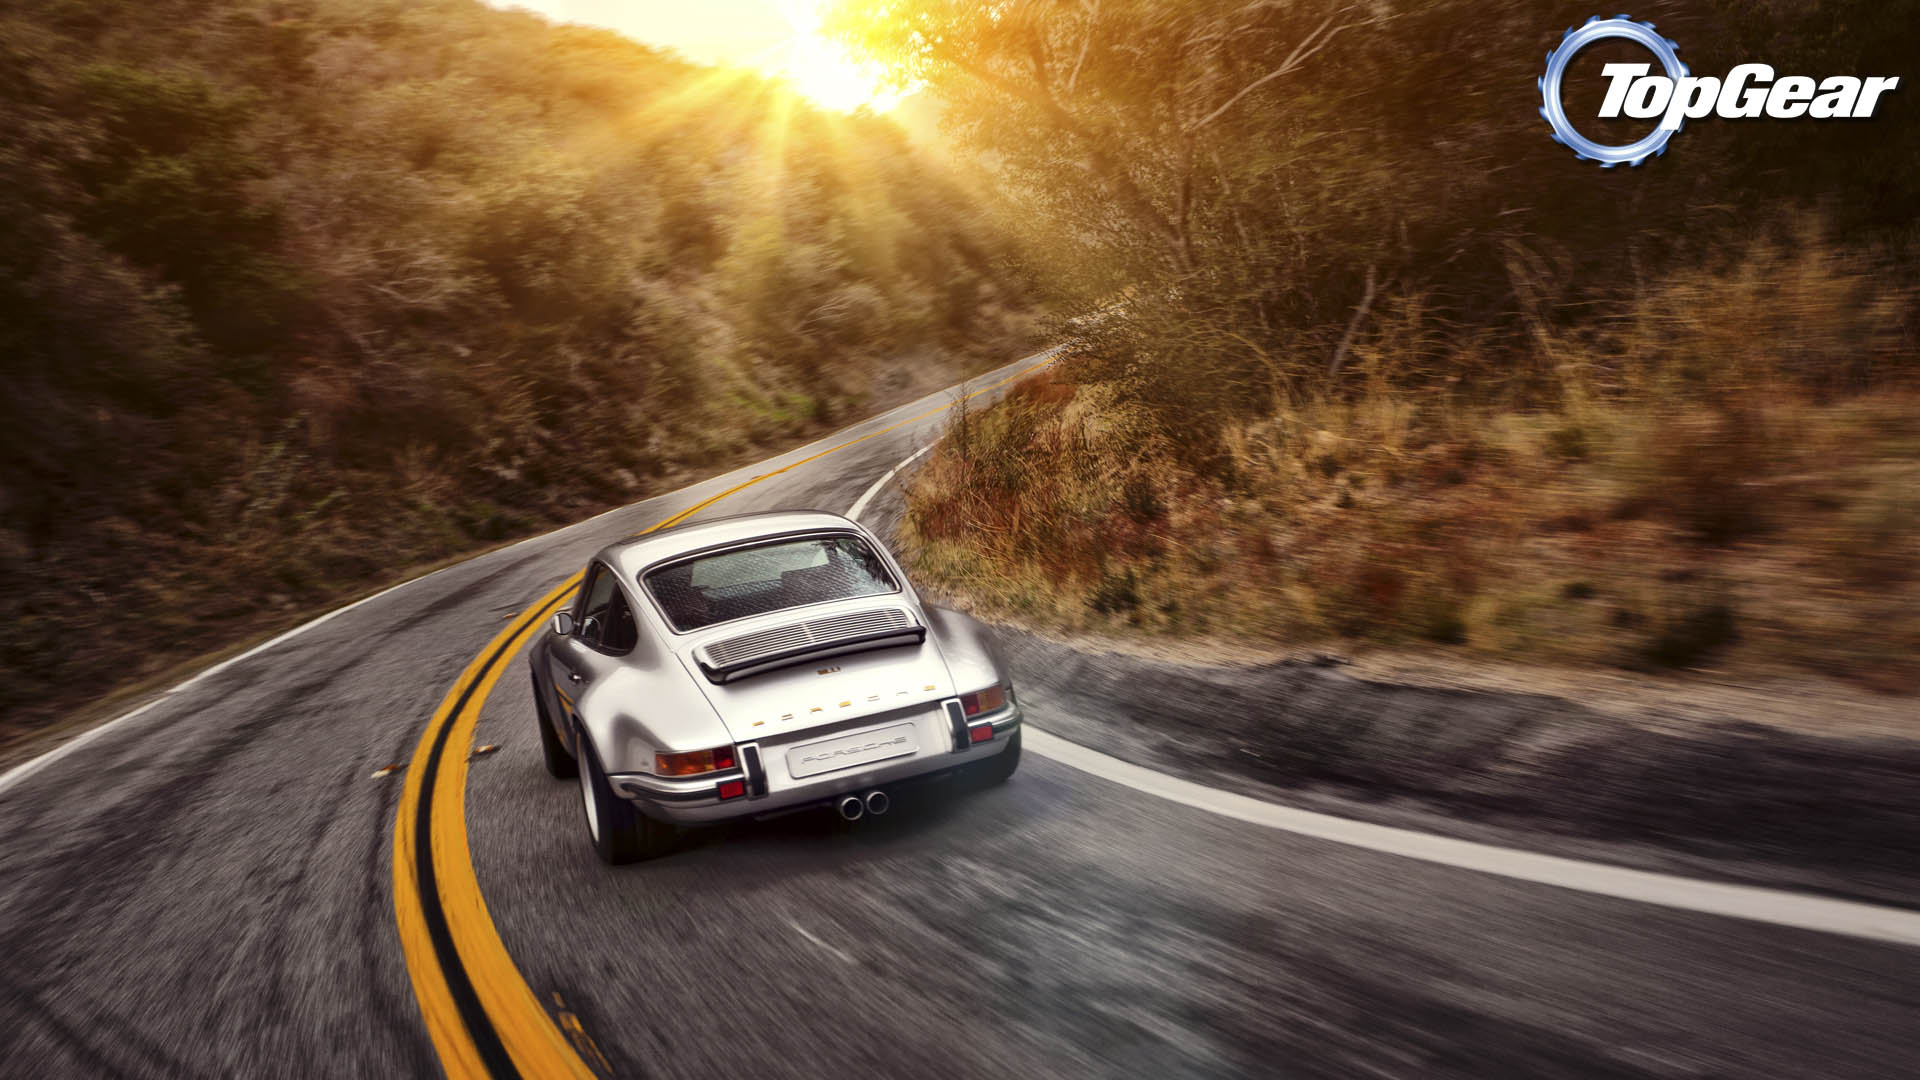 Old Porsche Top Gear Full HD Wallpaper